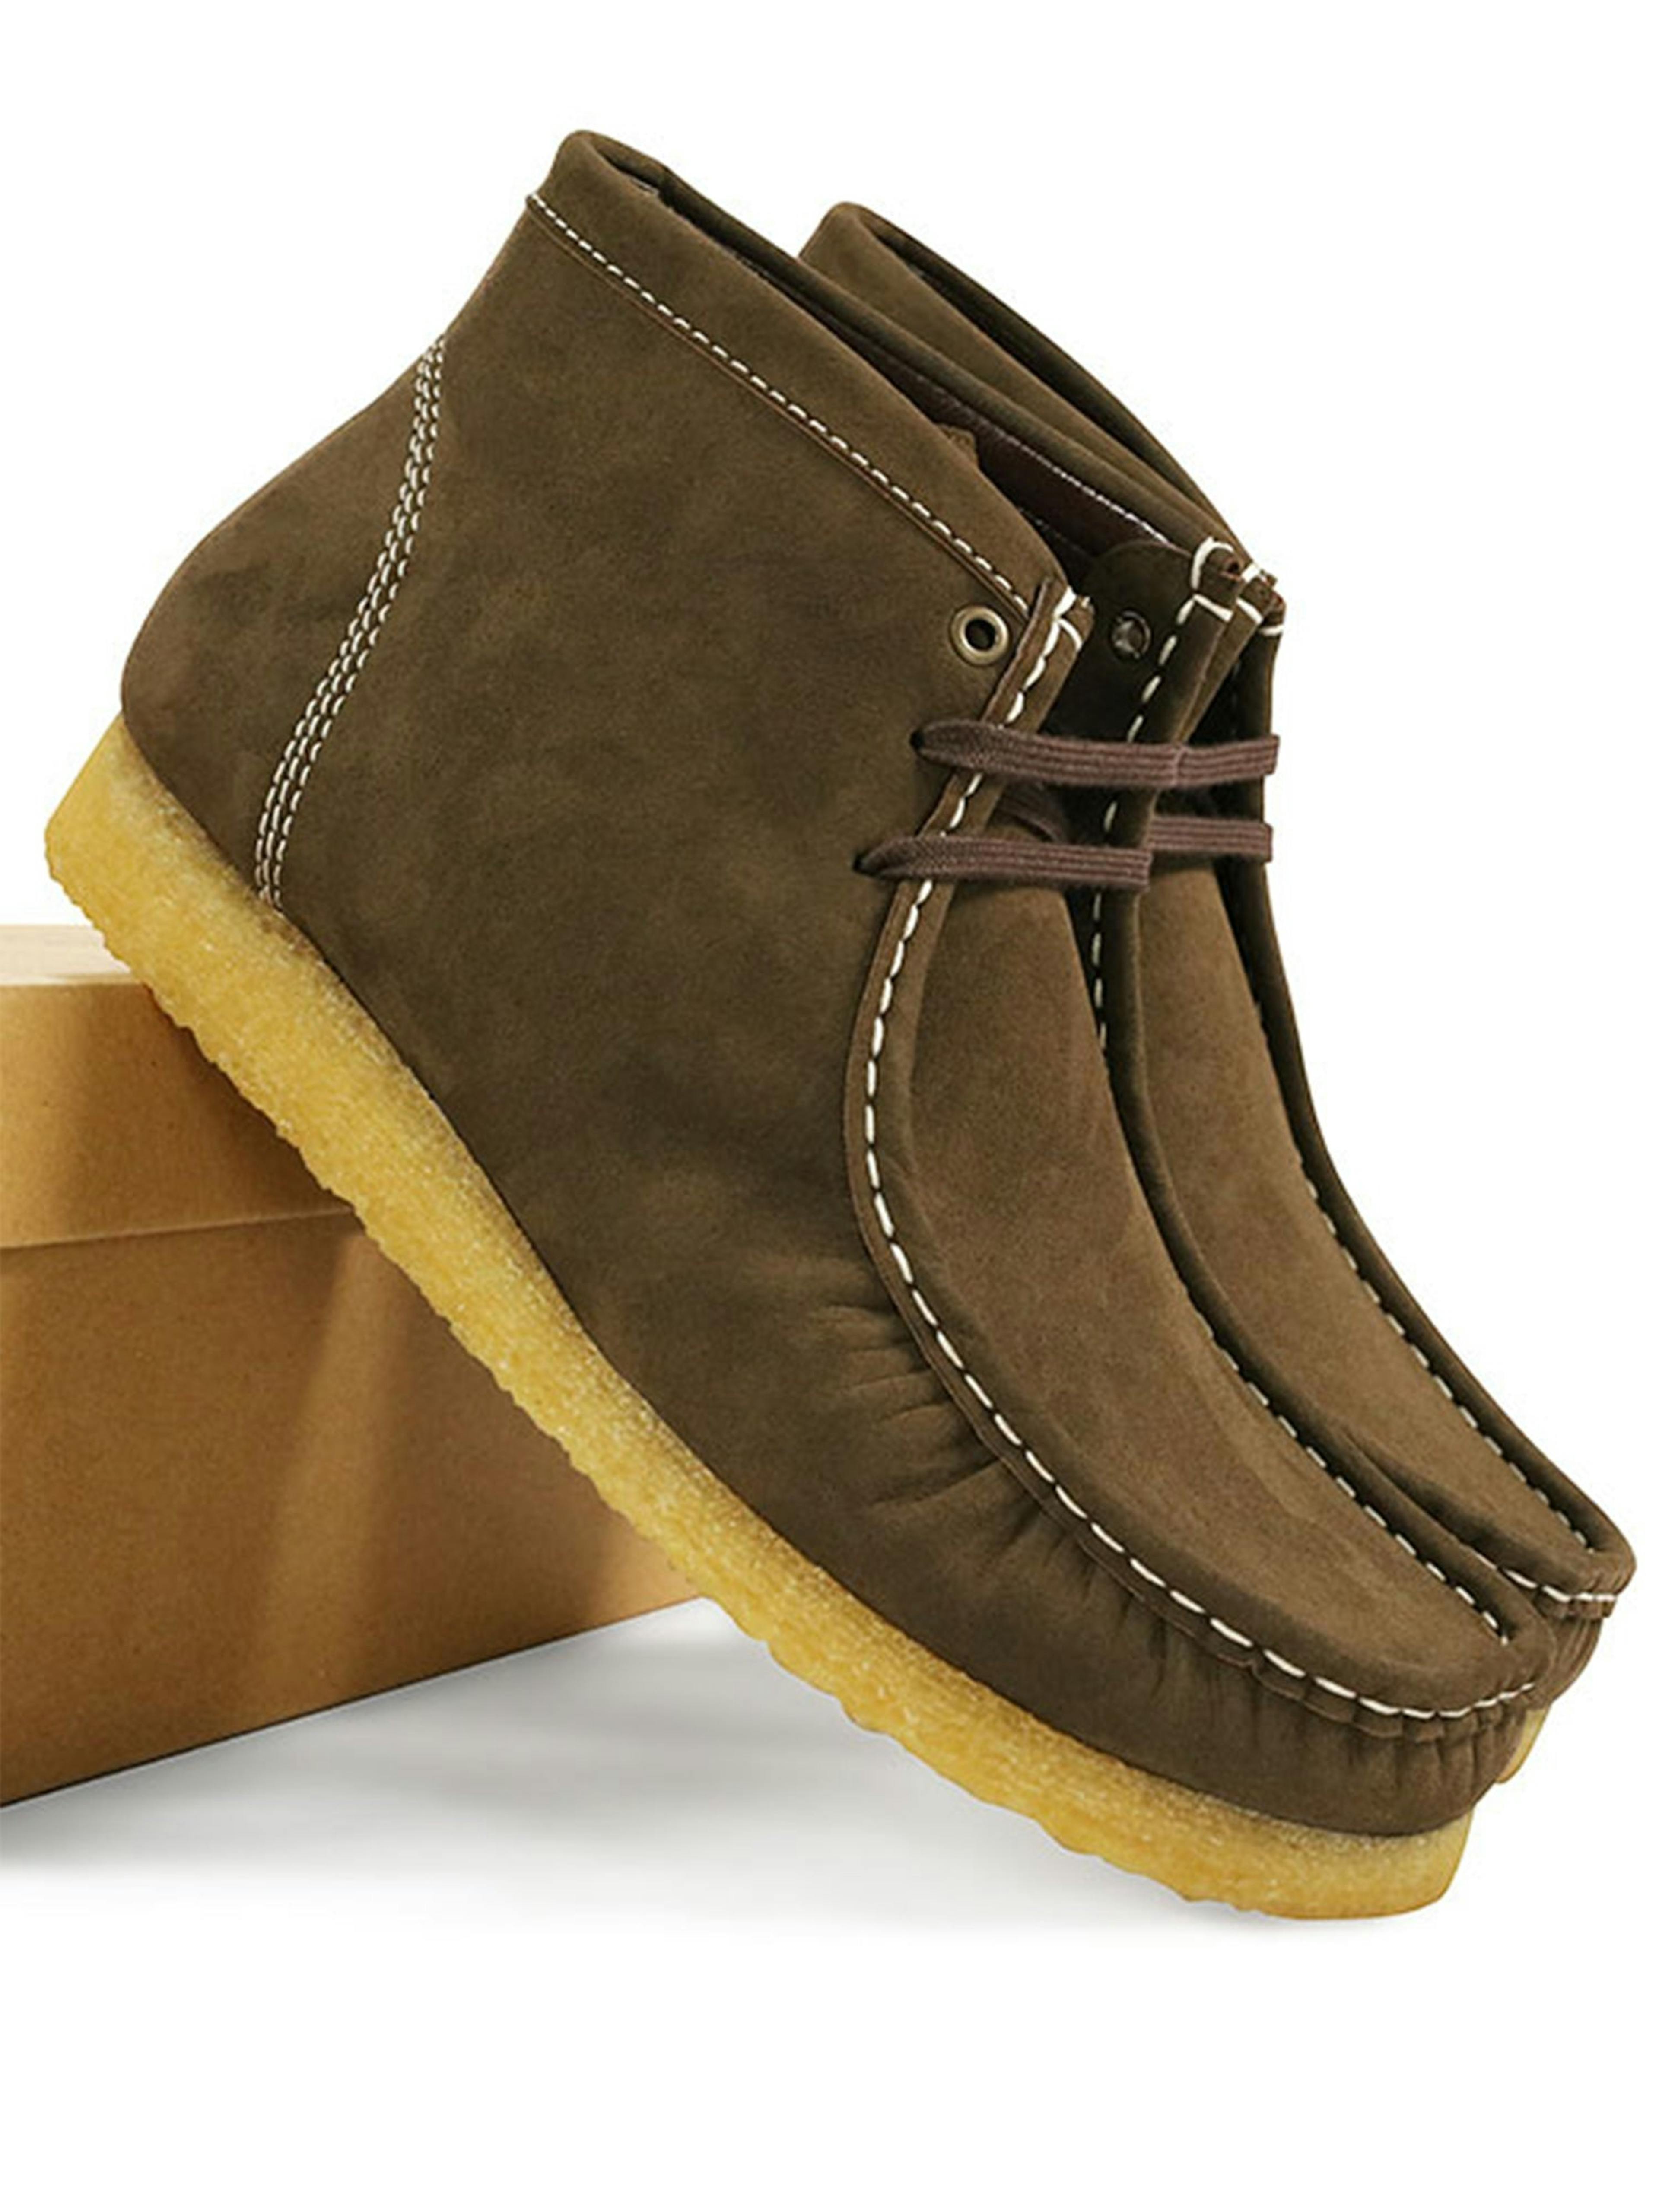 Certified Vegan Suede Moccasin Boots | Brown, Dark Brown & Cream